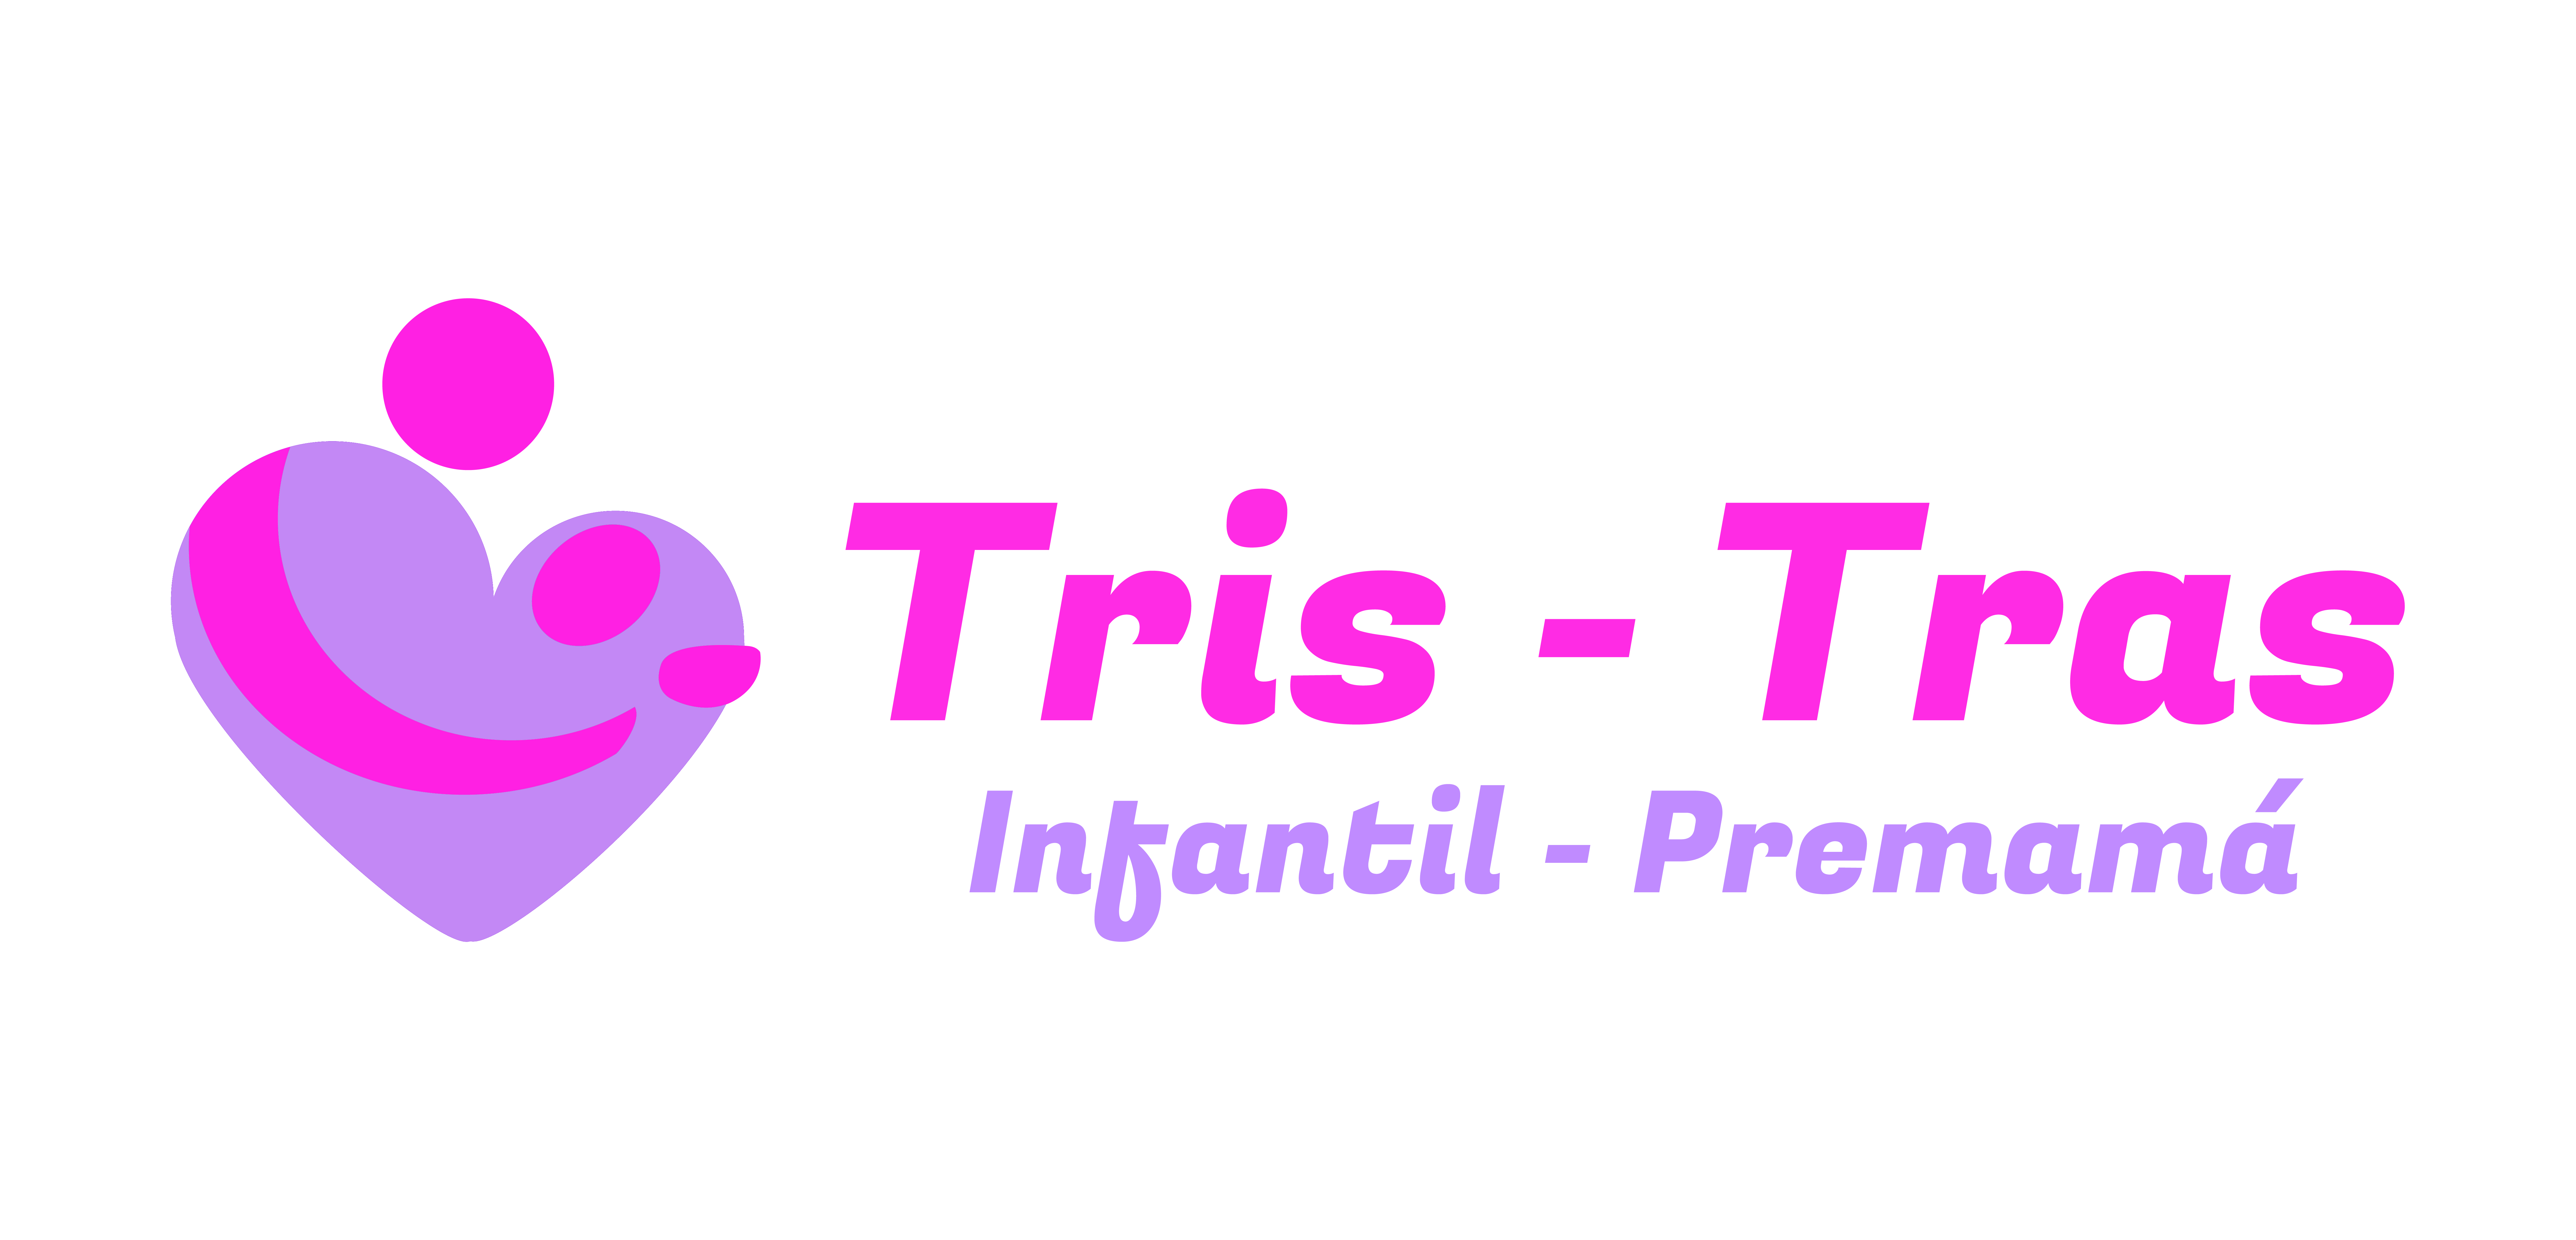 Silla Inglesina Modelo Aptica XT (2 Piezas) Color Charcoal Grey - Tienda  On-Line Tris-Tras, todo para tu bebe.